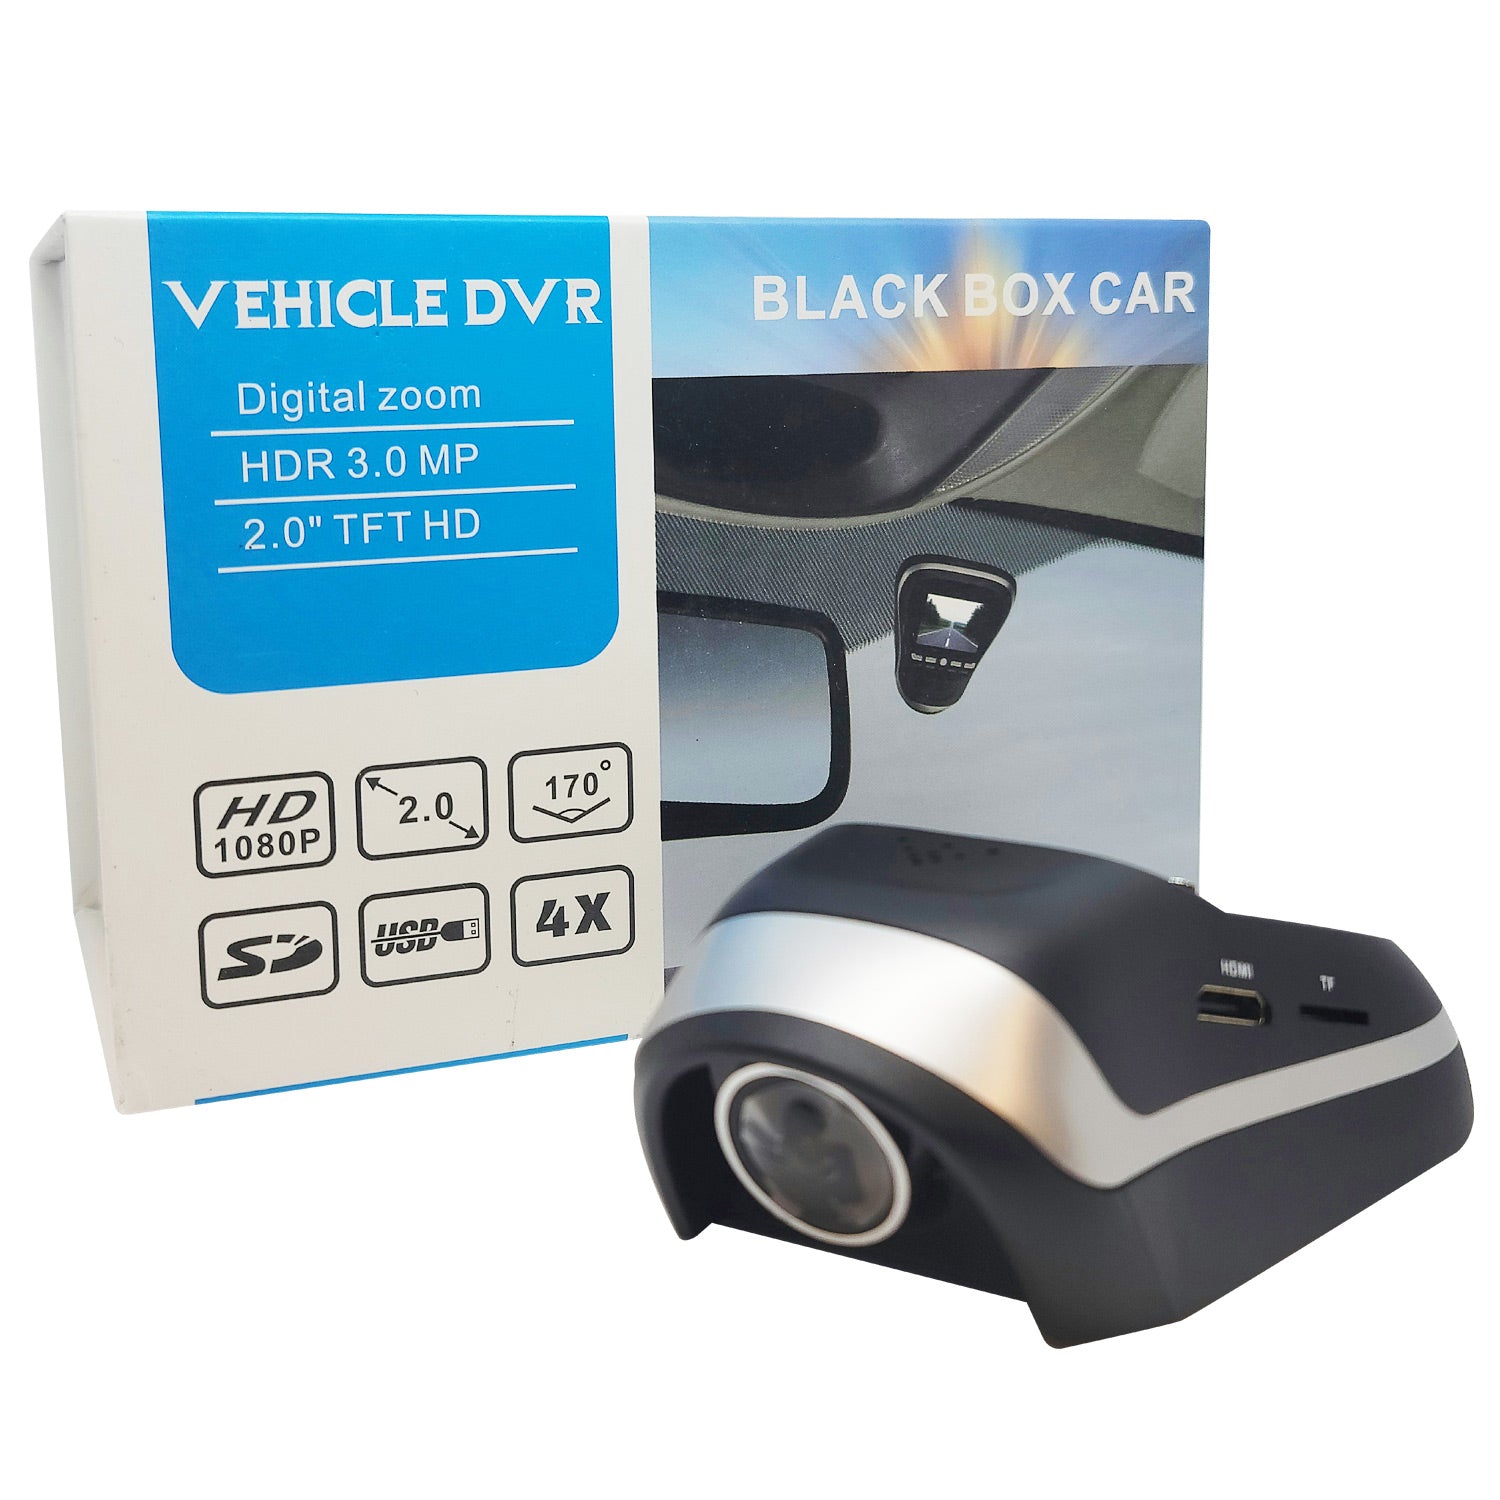 https://tripletraders.com/cdn/shop/products/black-box-car-vehicle-dvr-dashcam-01_1500x.jpg?v=1668536648